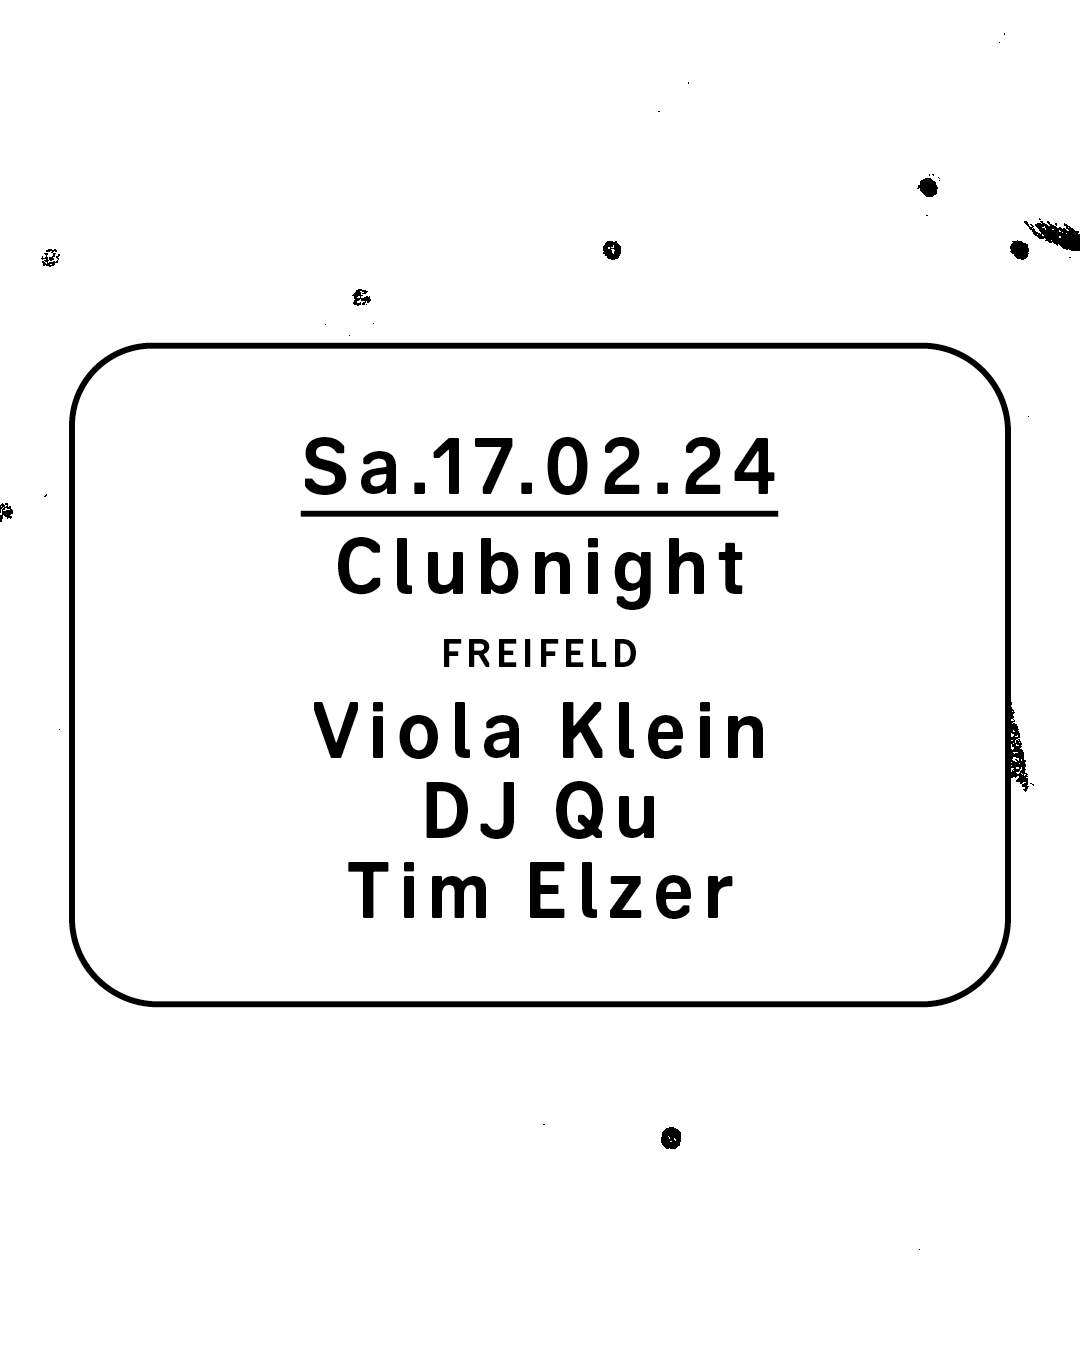 Clubnight - Viola Klein, DJ Qu, Tim Elzer - フライヤー裏